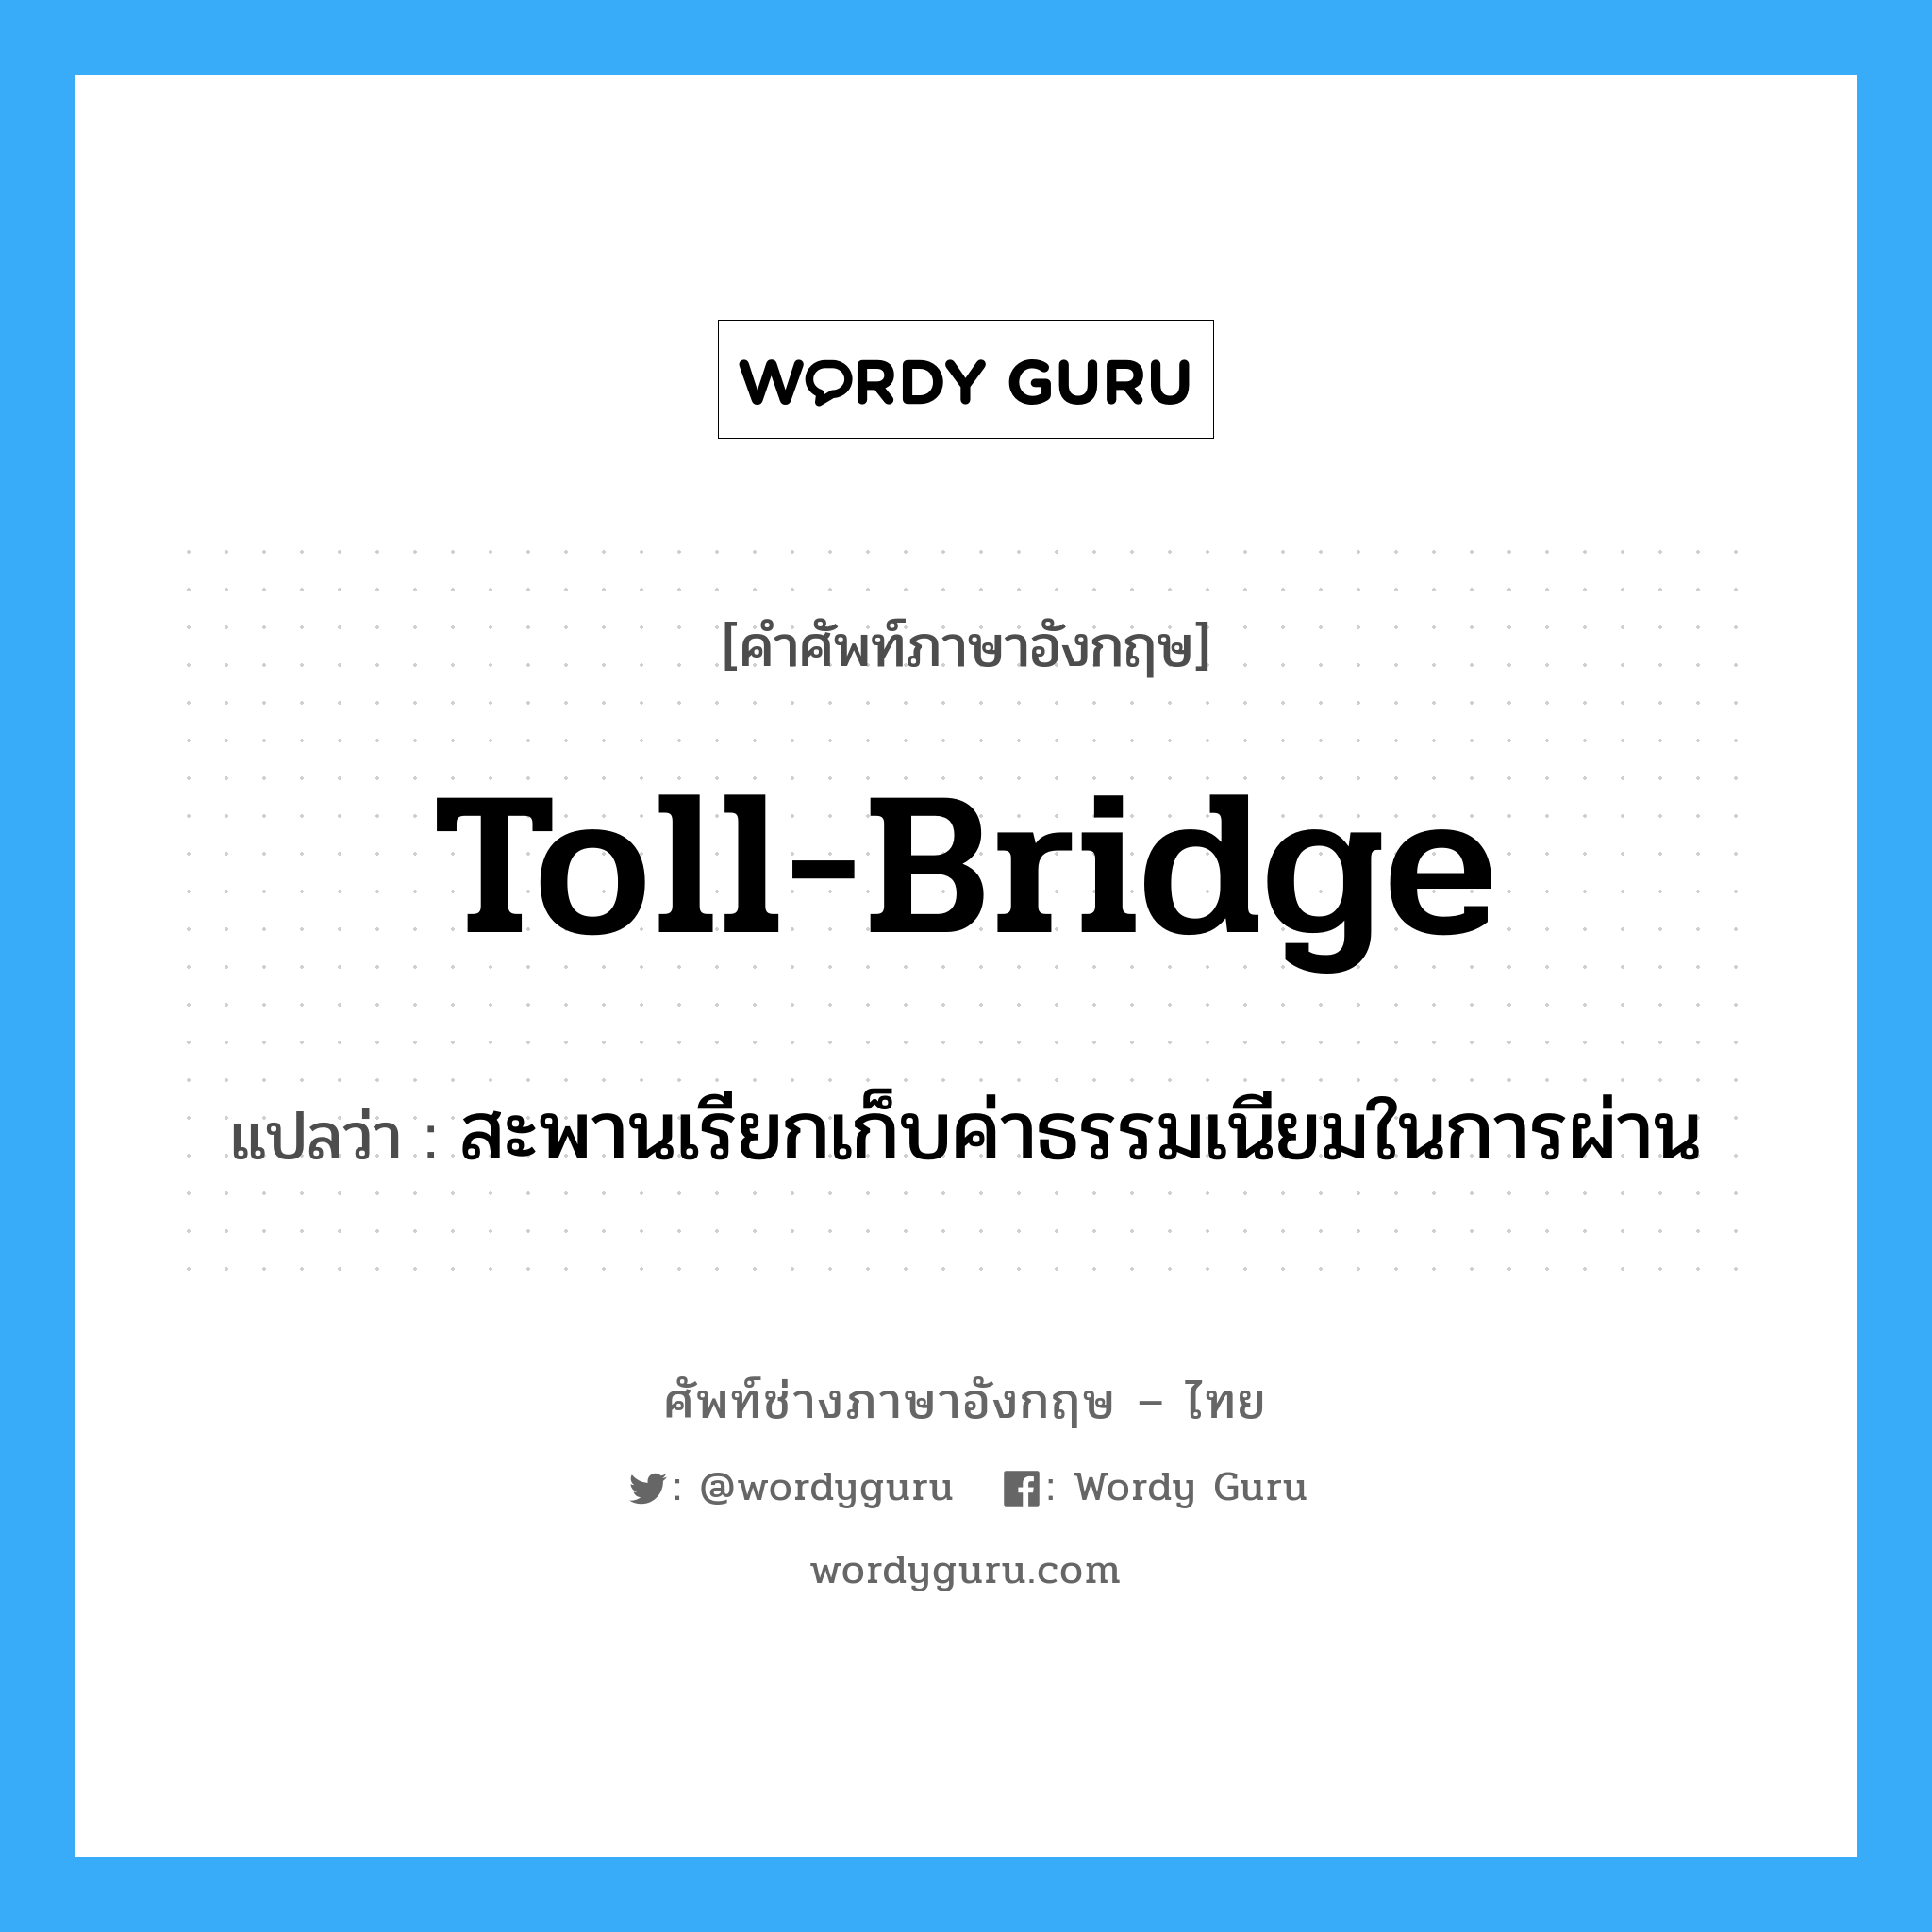 toll-bridge แปลว่า?, คำศัพท์ช่างภาษาอังกฤษ - ไทย toll-bridge คำศัพท์ภาษาอังกฤษ toll-bridge แปลว่า สะพานเรียกเก็บค่าธรรมเนียมในการผ่าน